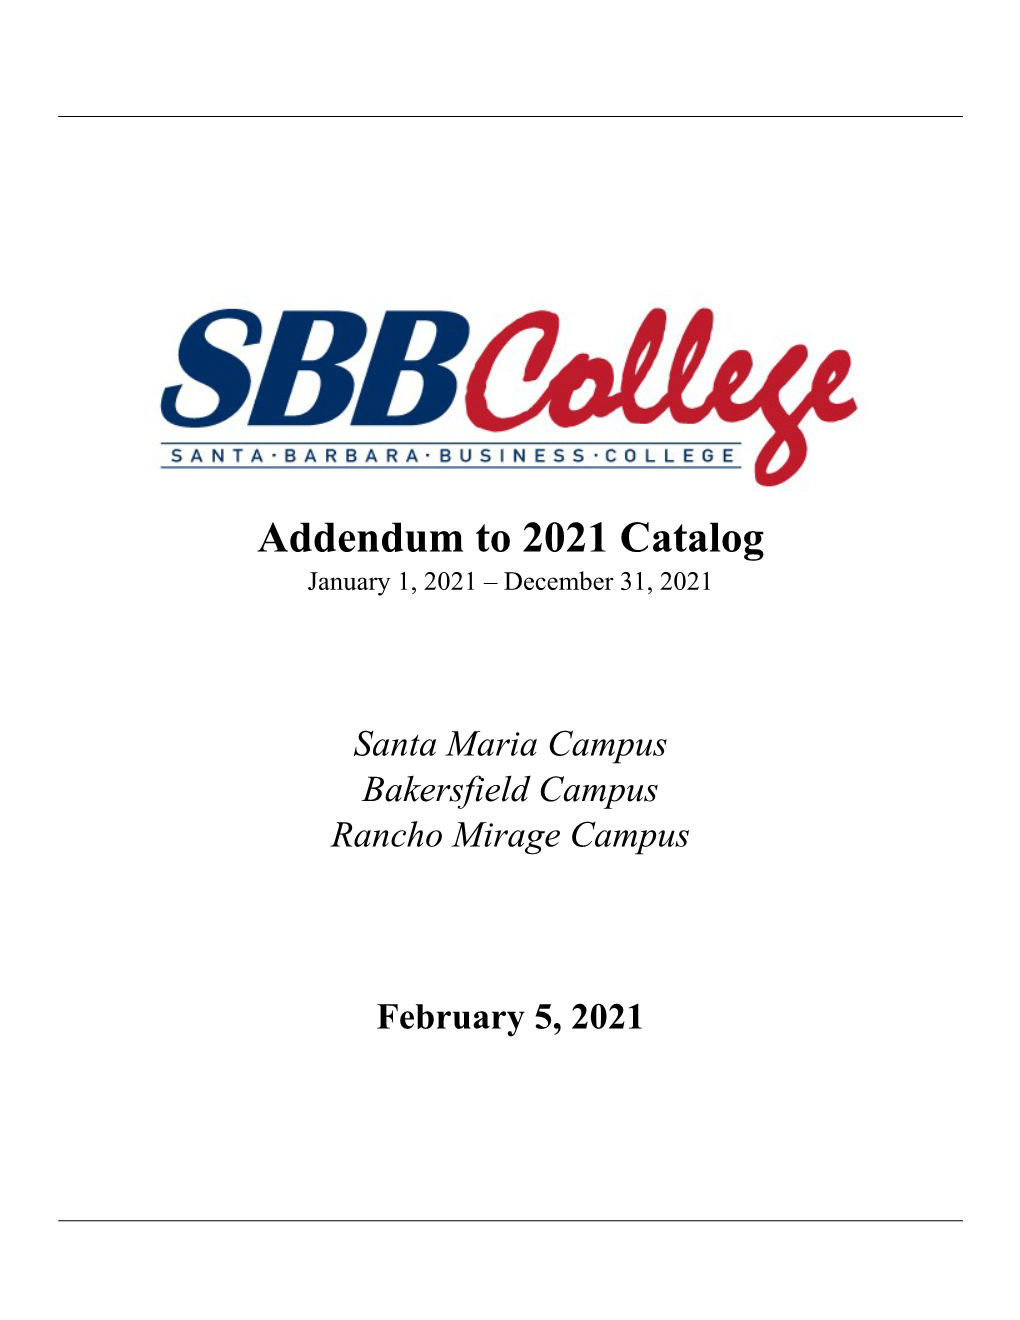 2017 Sbbcollege Catalog Addendum